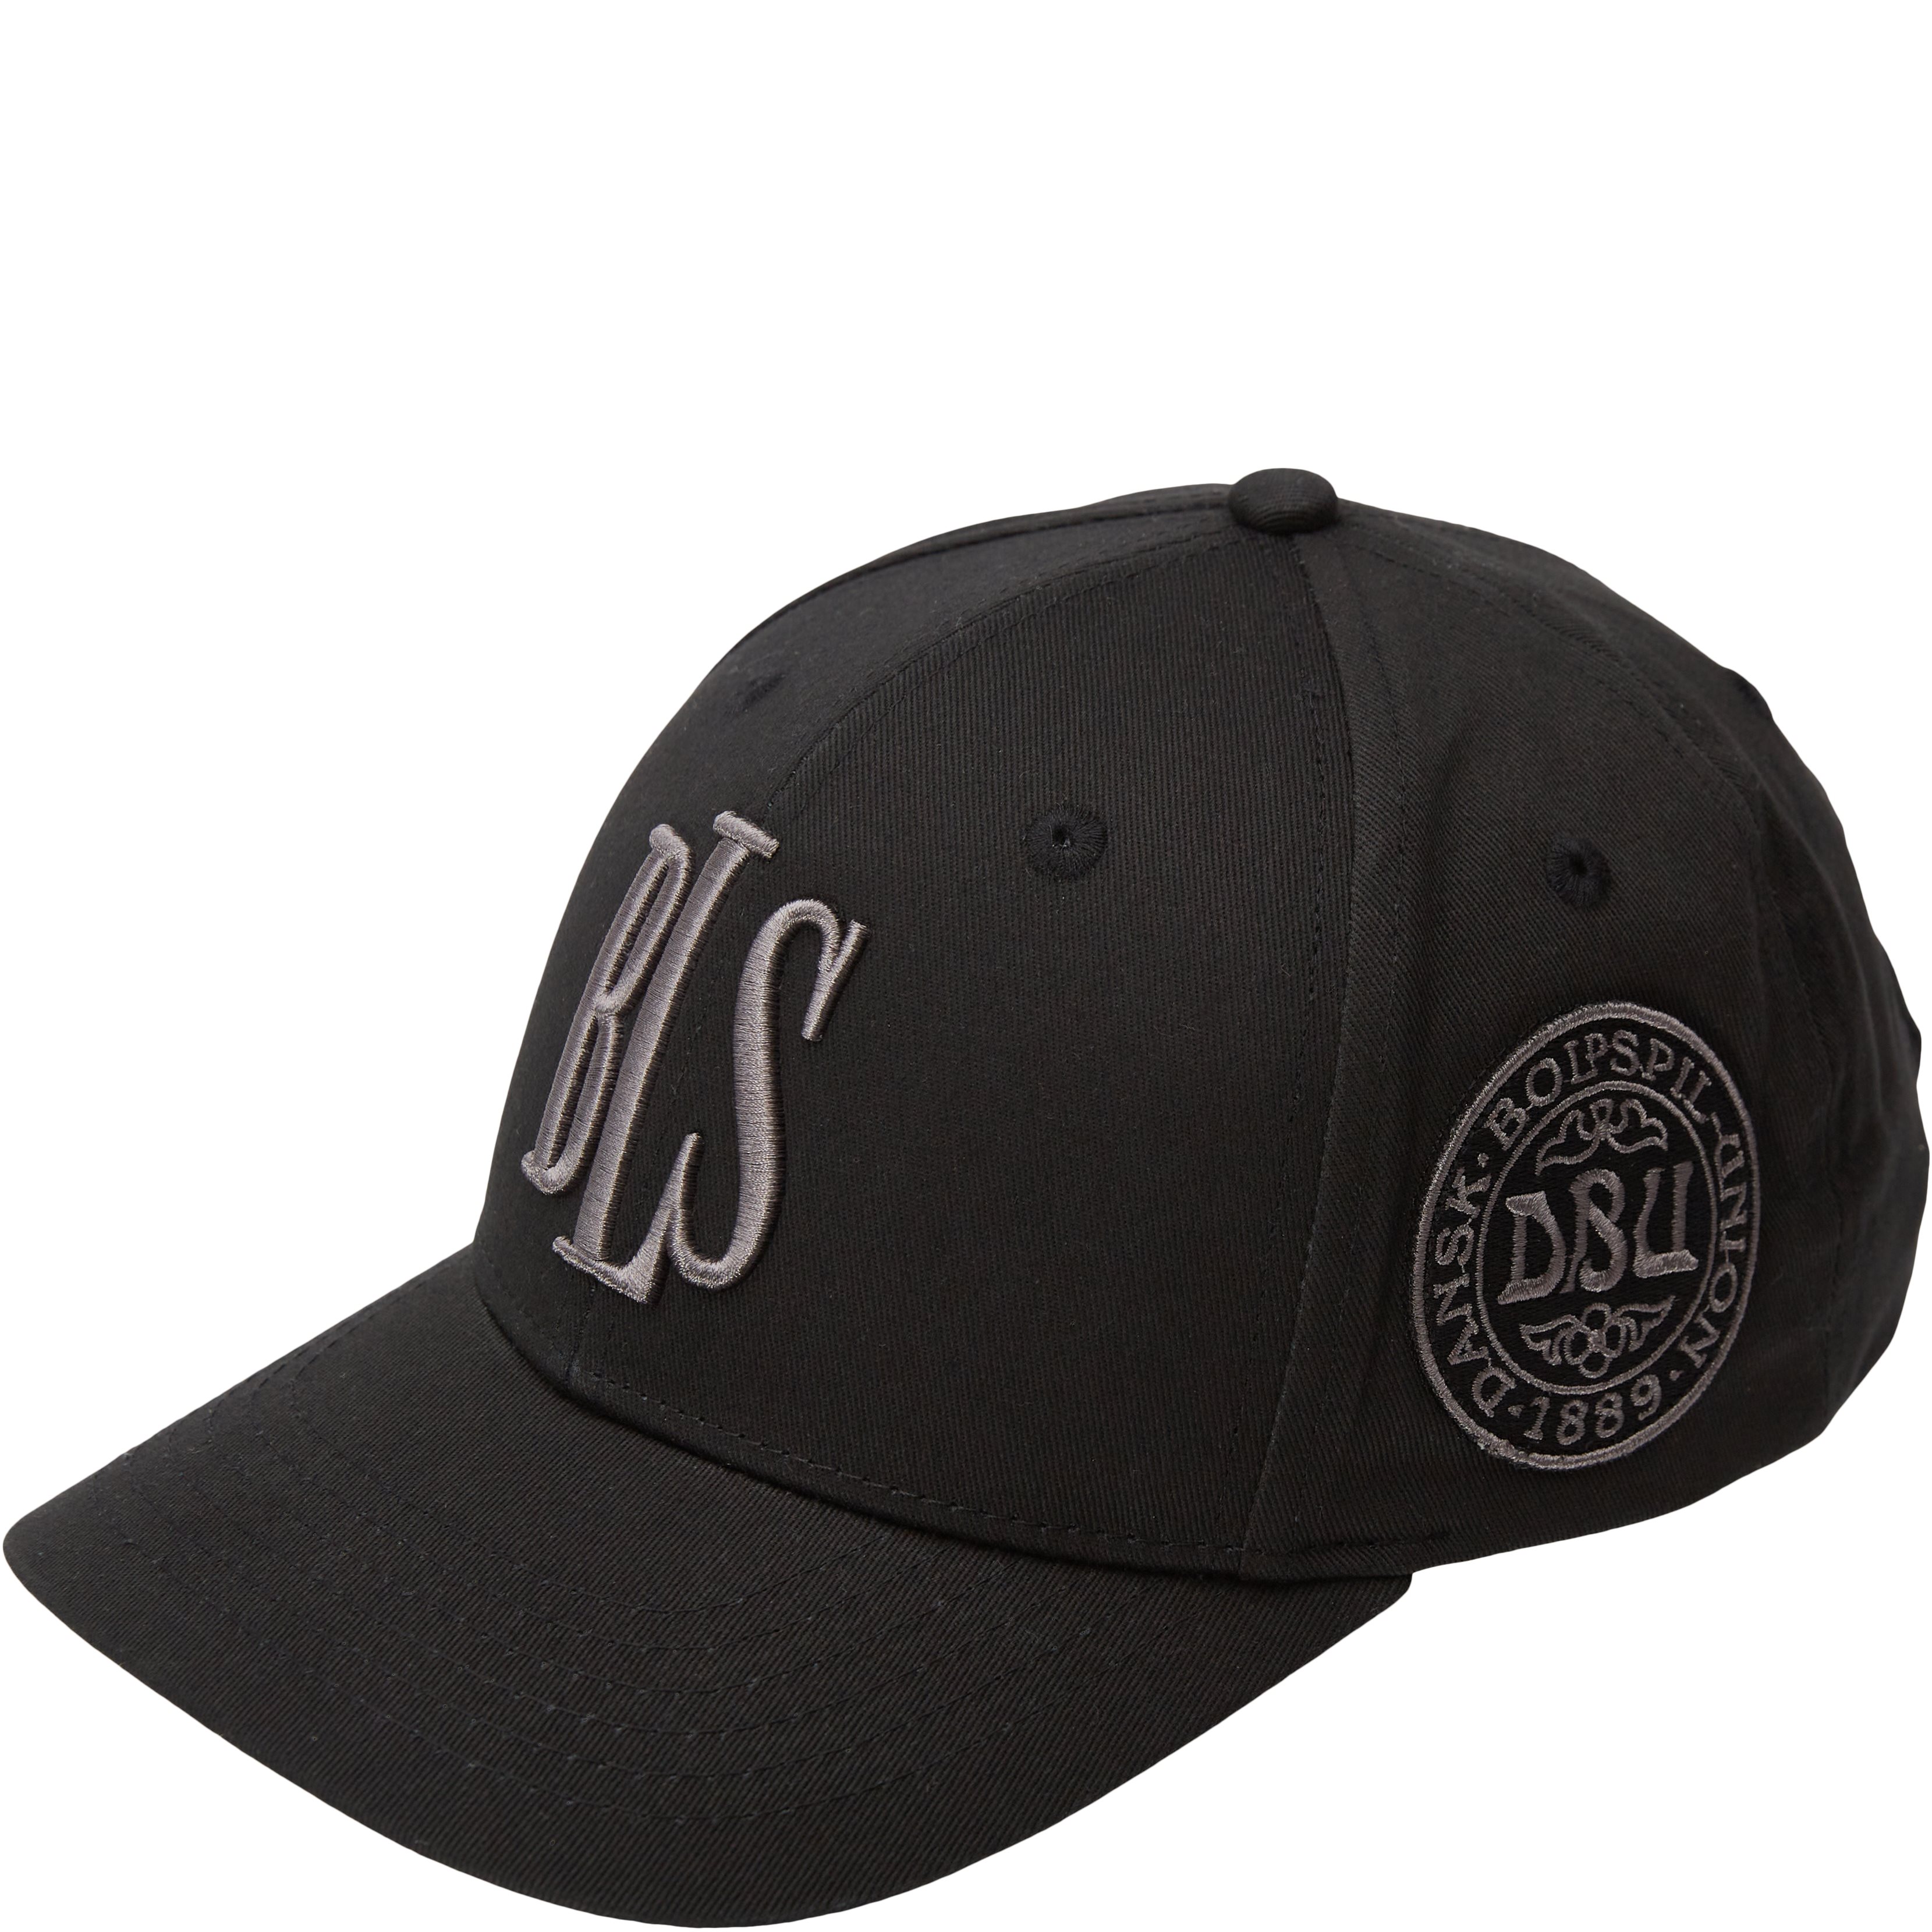 BLS Caps DBU HUMMEL CAP Black